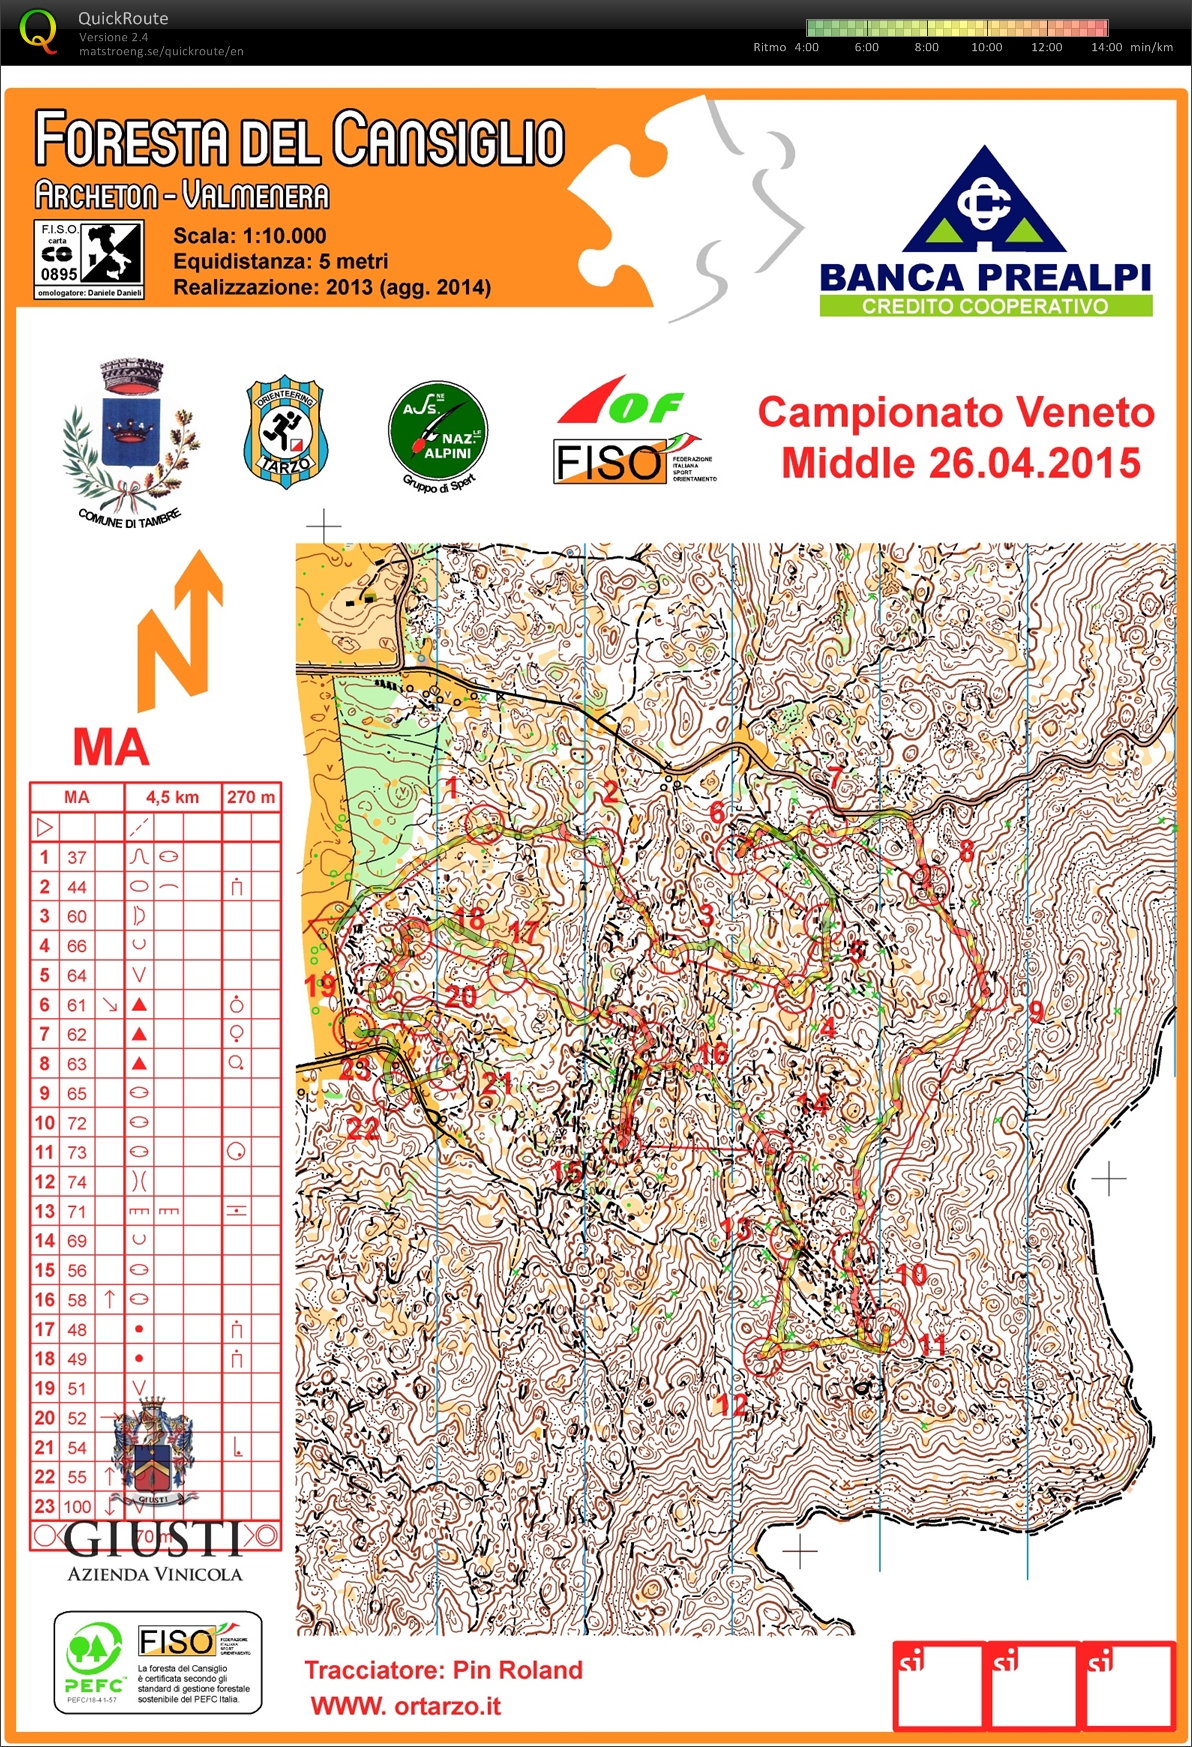 Campionato Veneto Middle 2015 (26/04/2015)